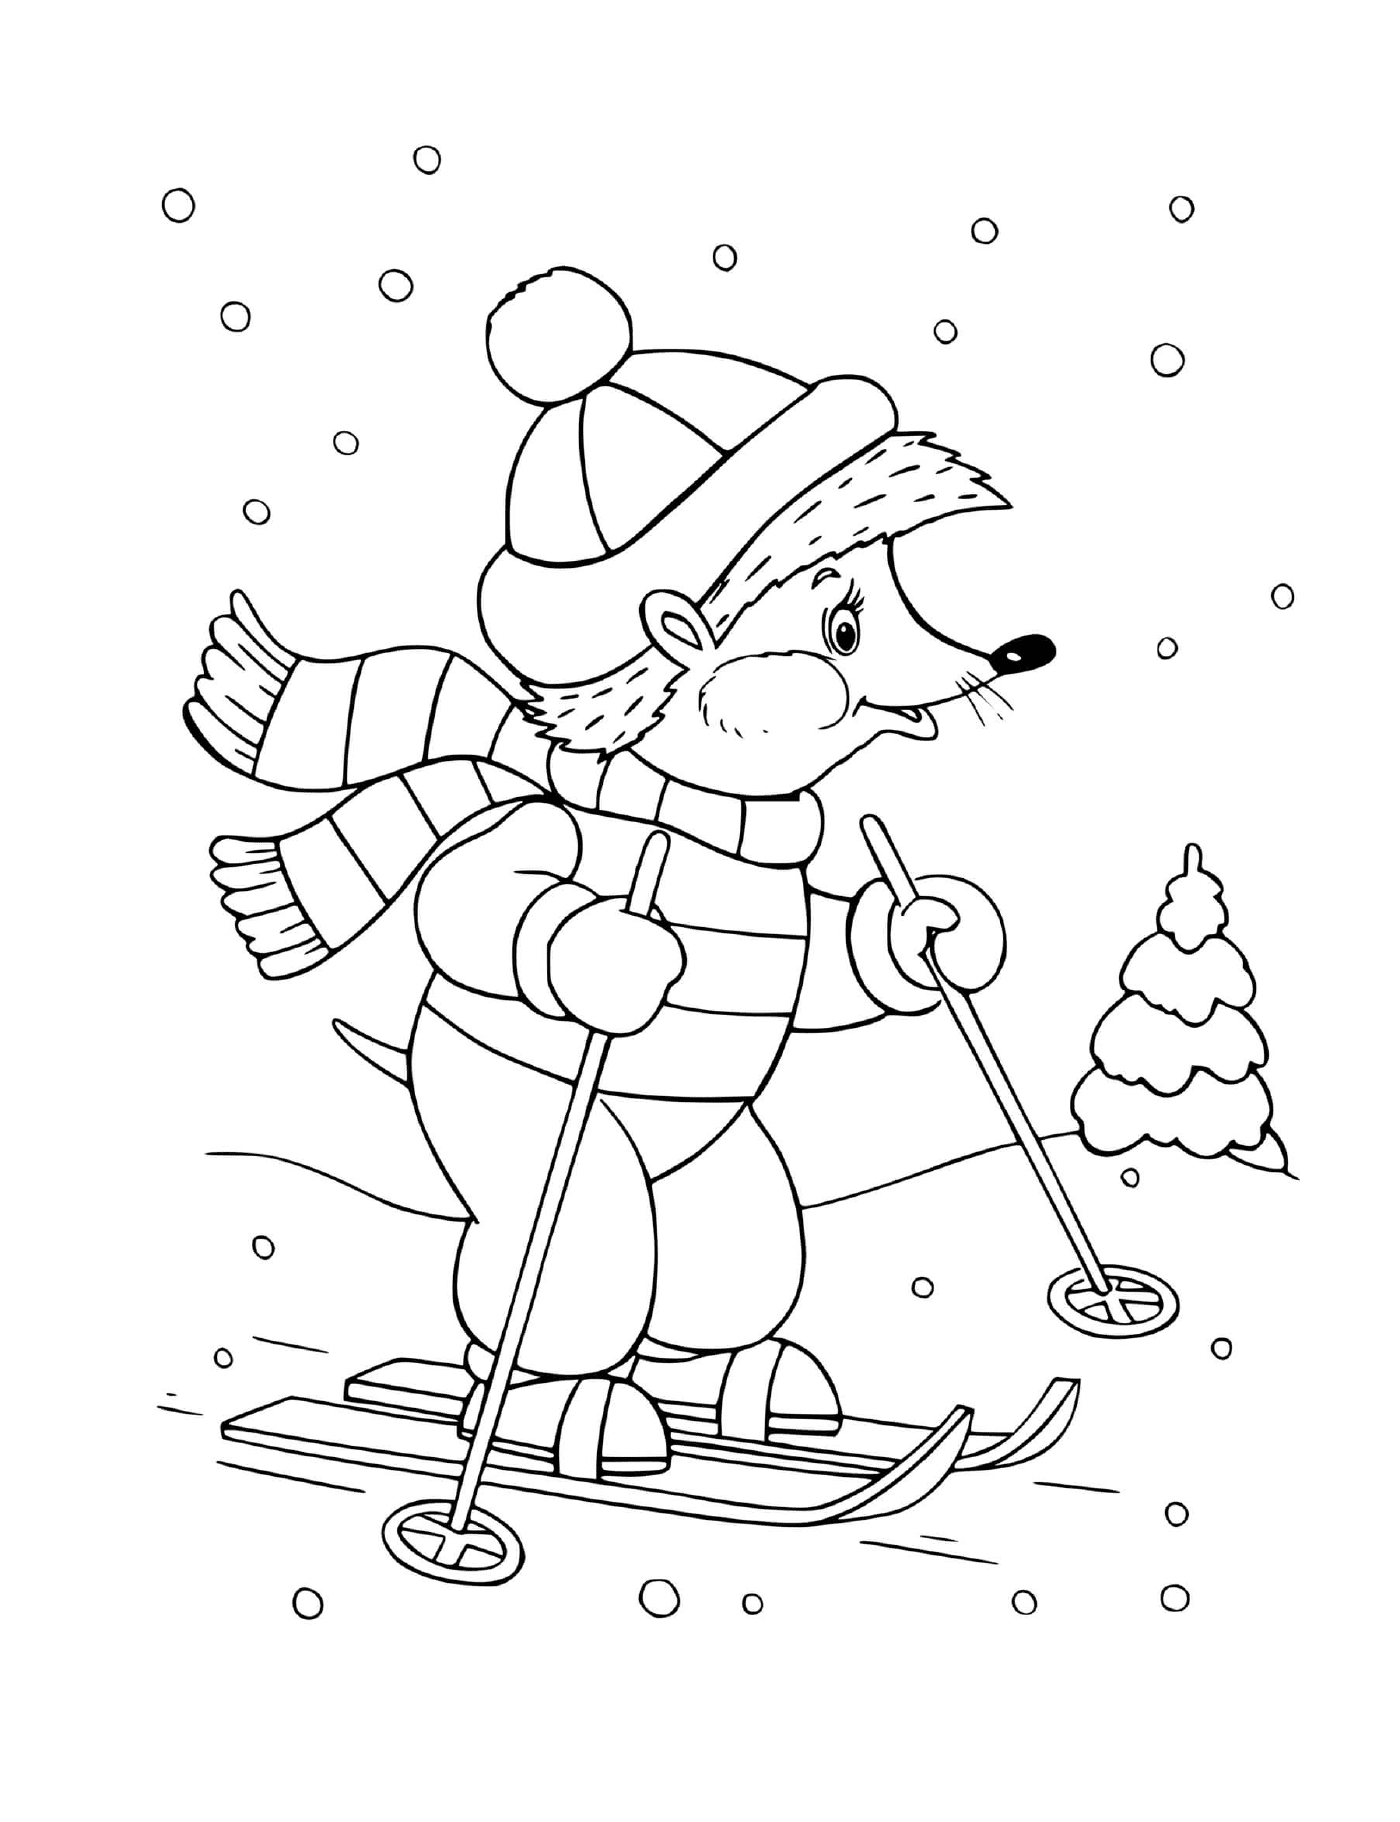  Abile sciatore d'orso dello sciatore 